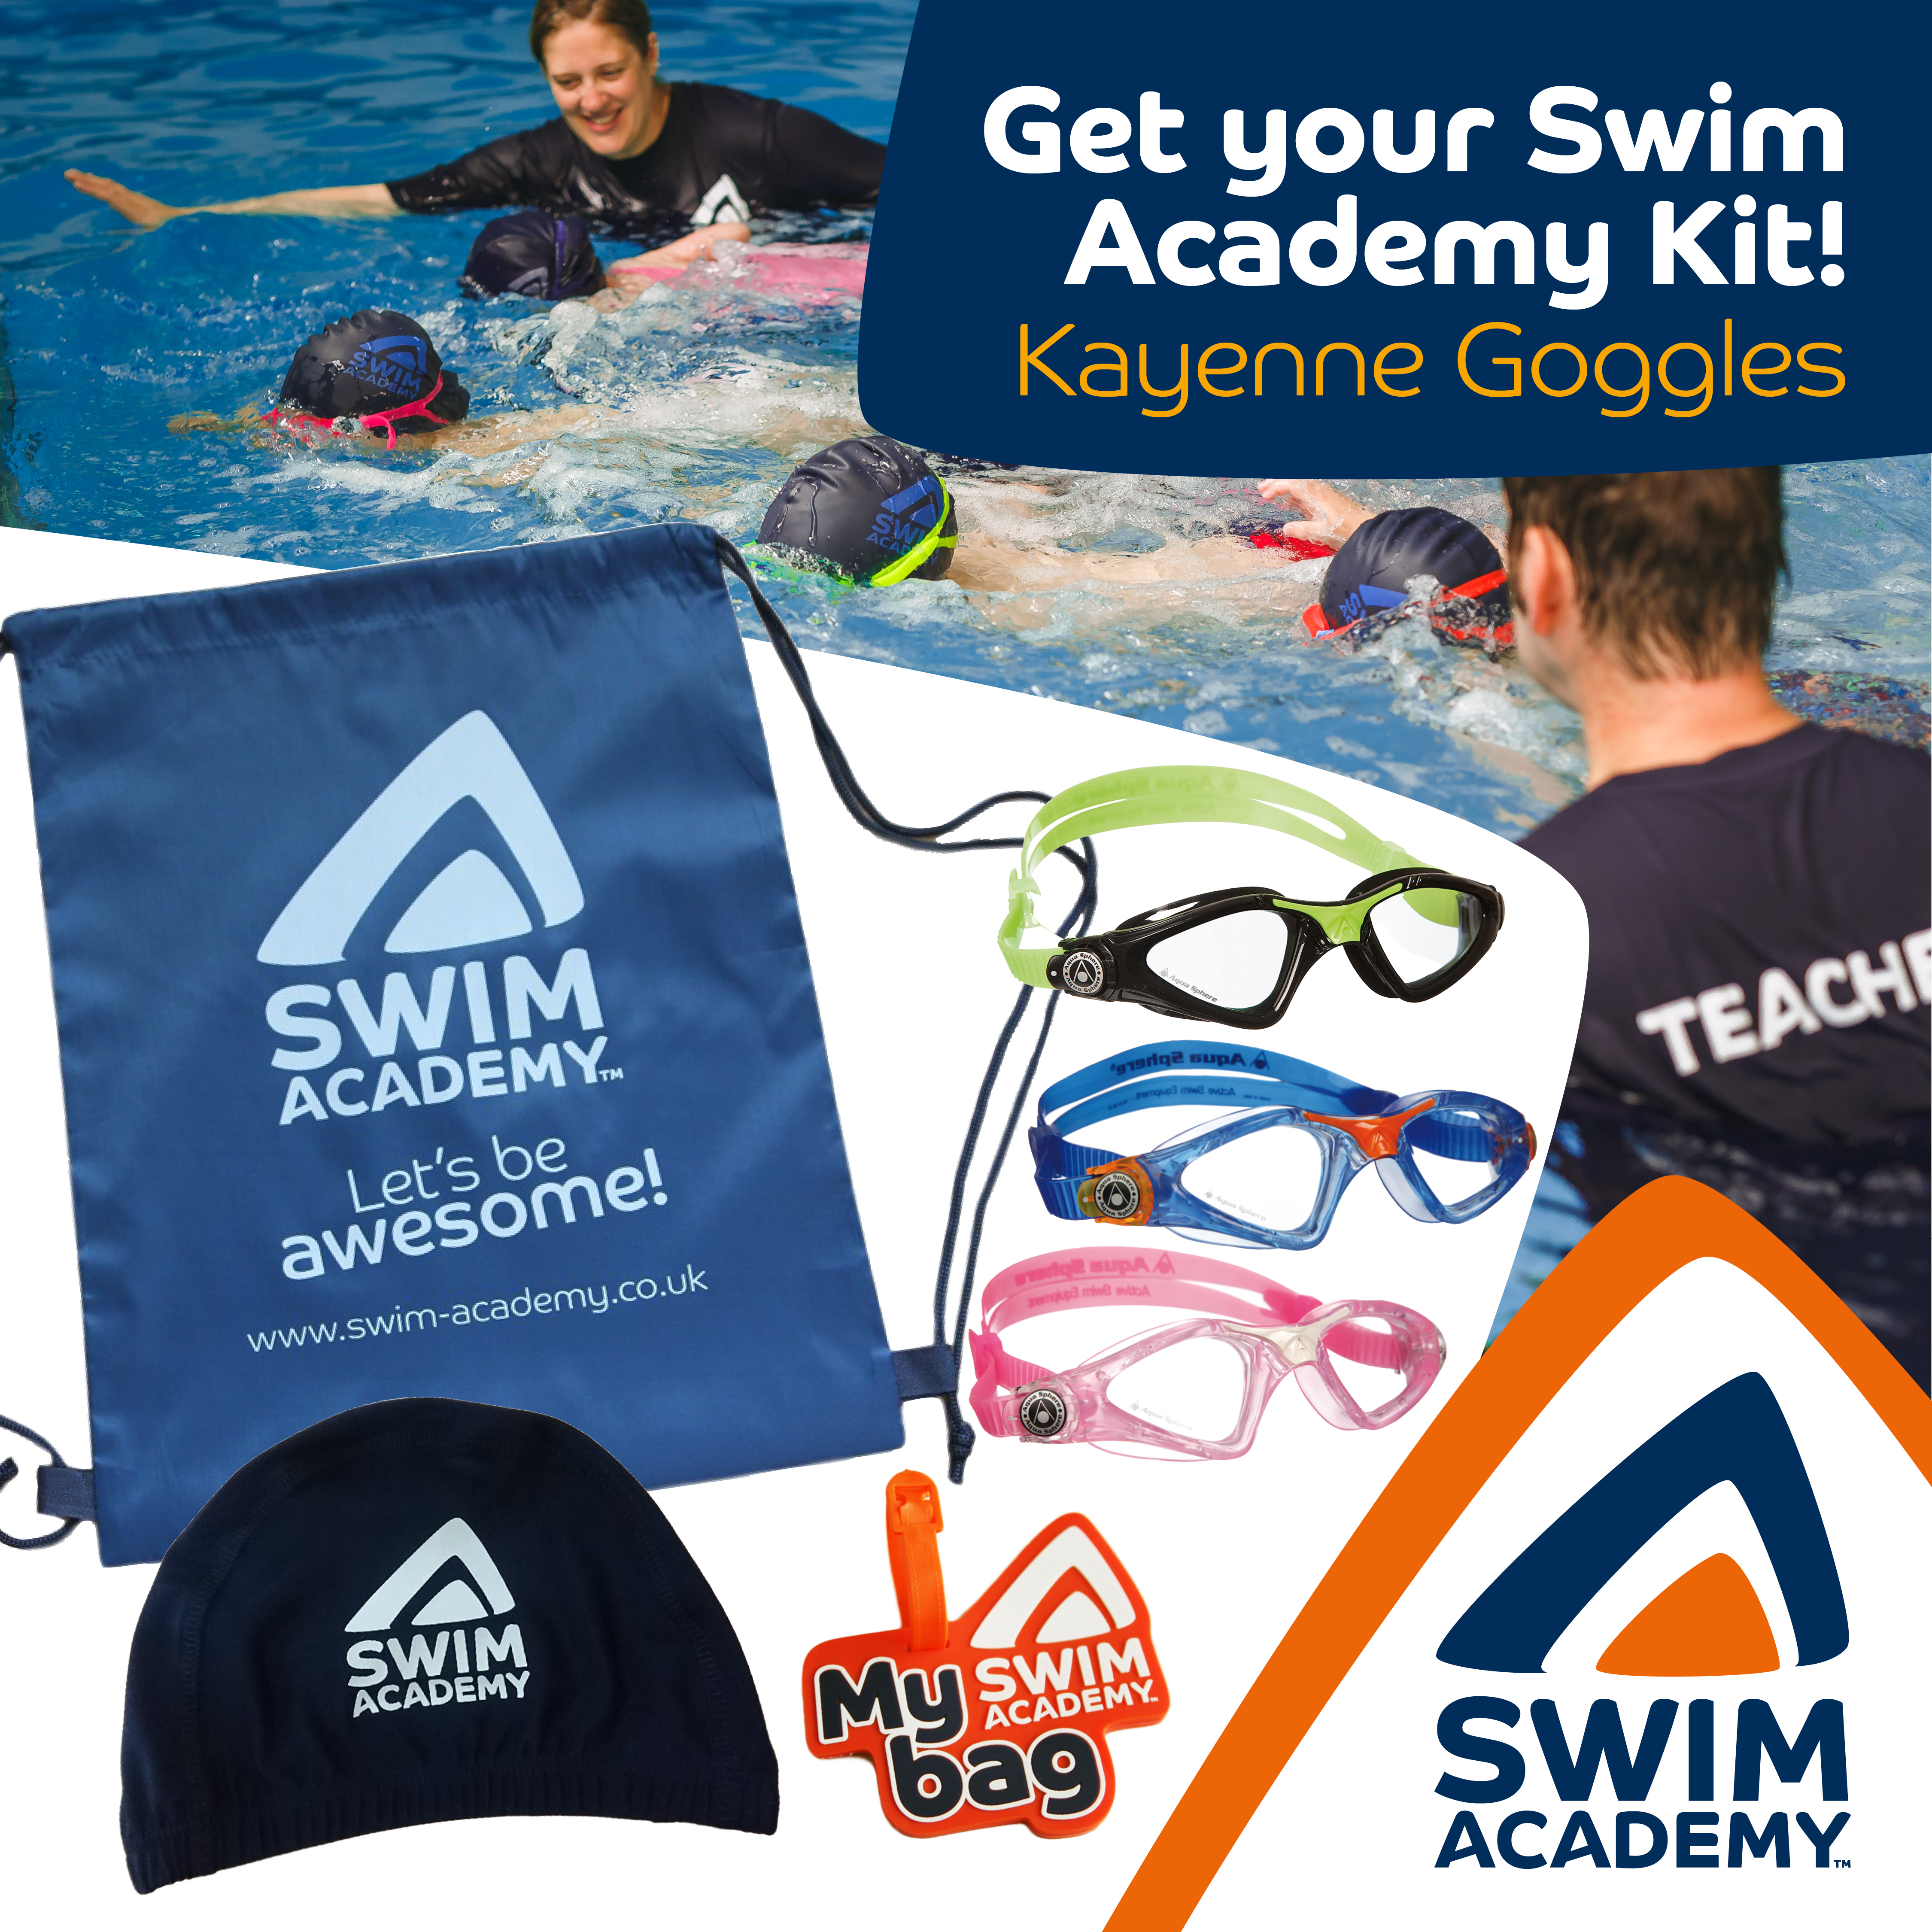 Swim Academy Kit with Aquasphere Kayenne Goggles